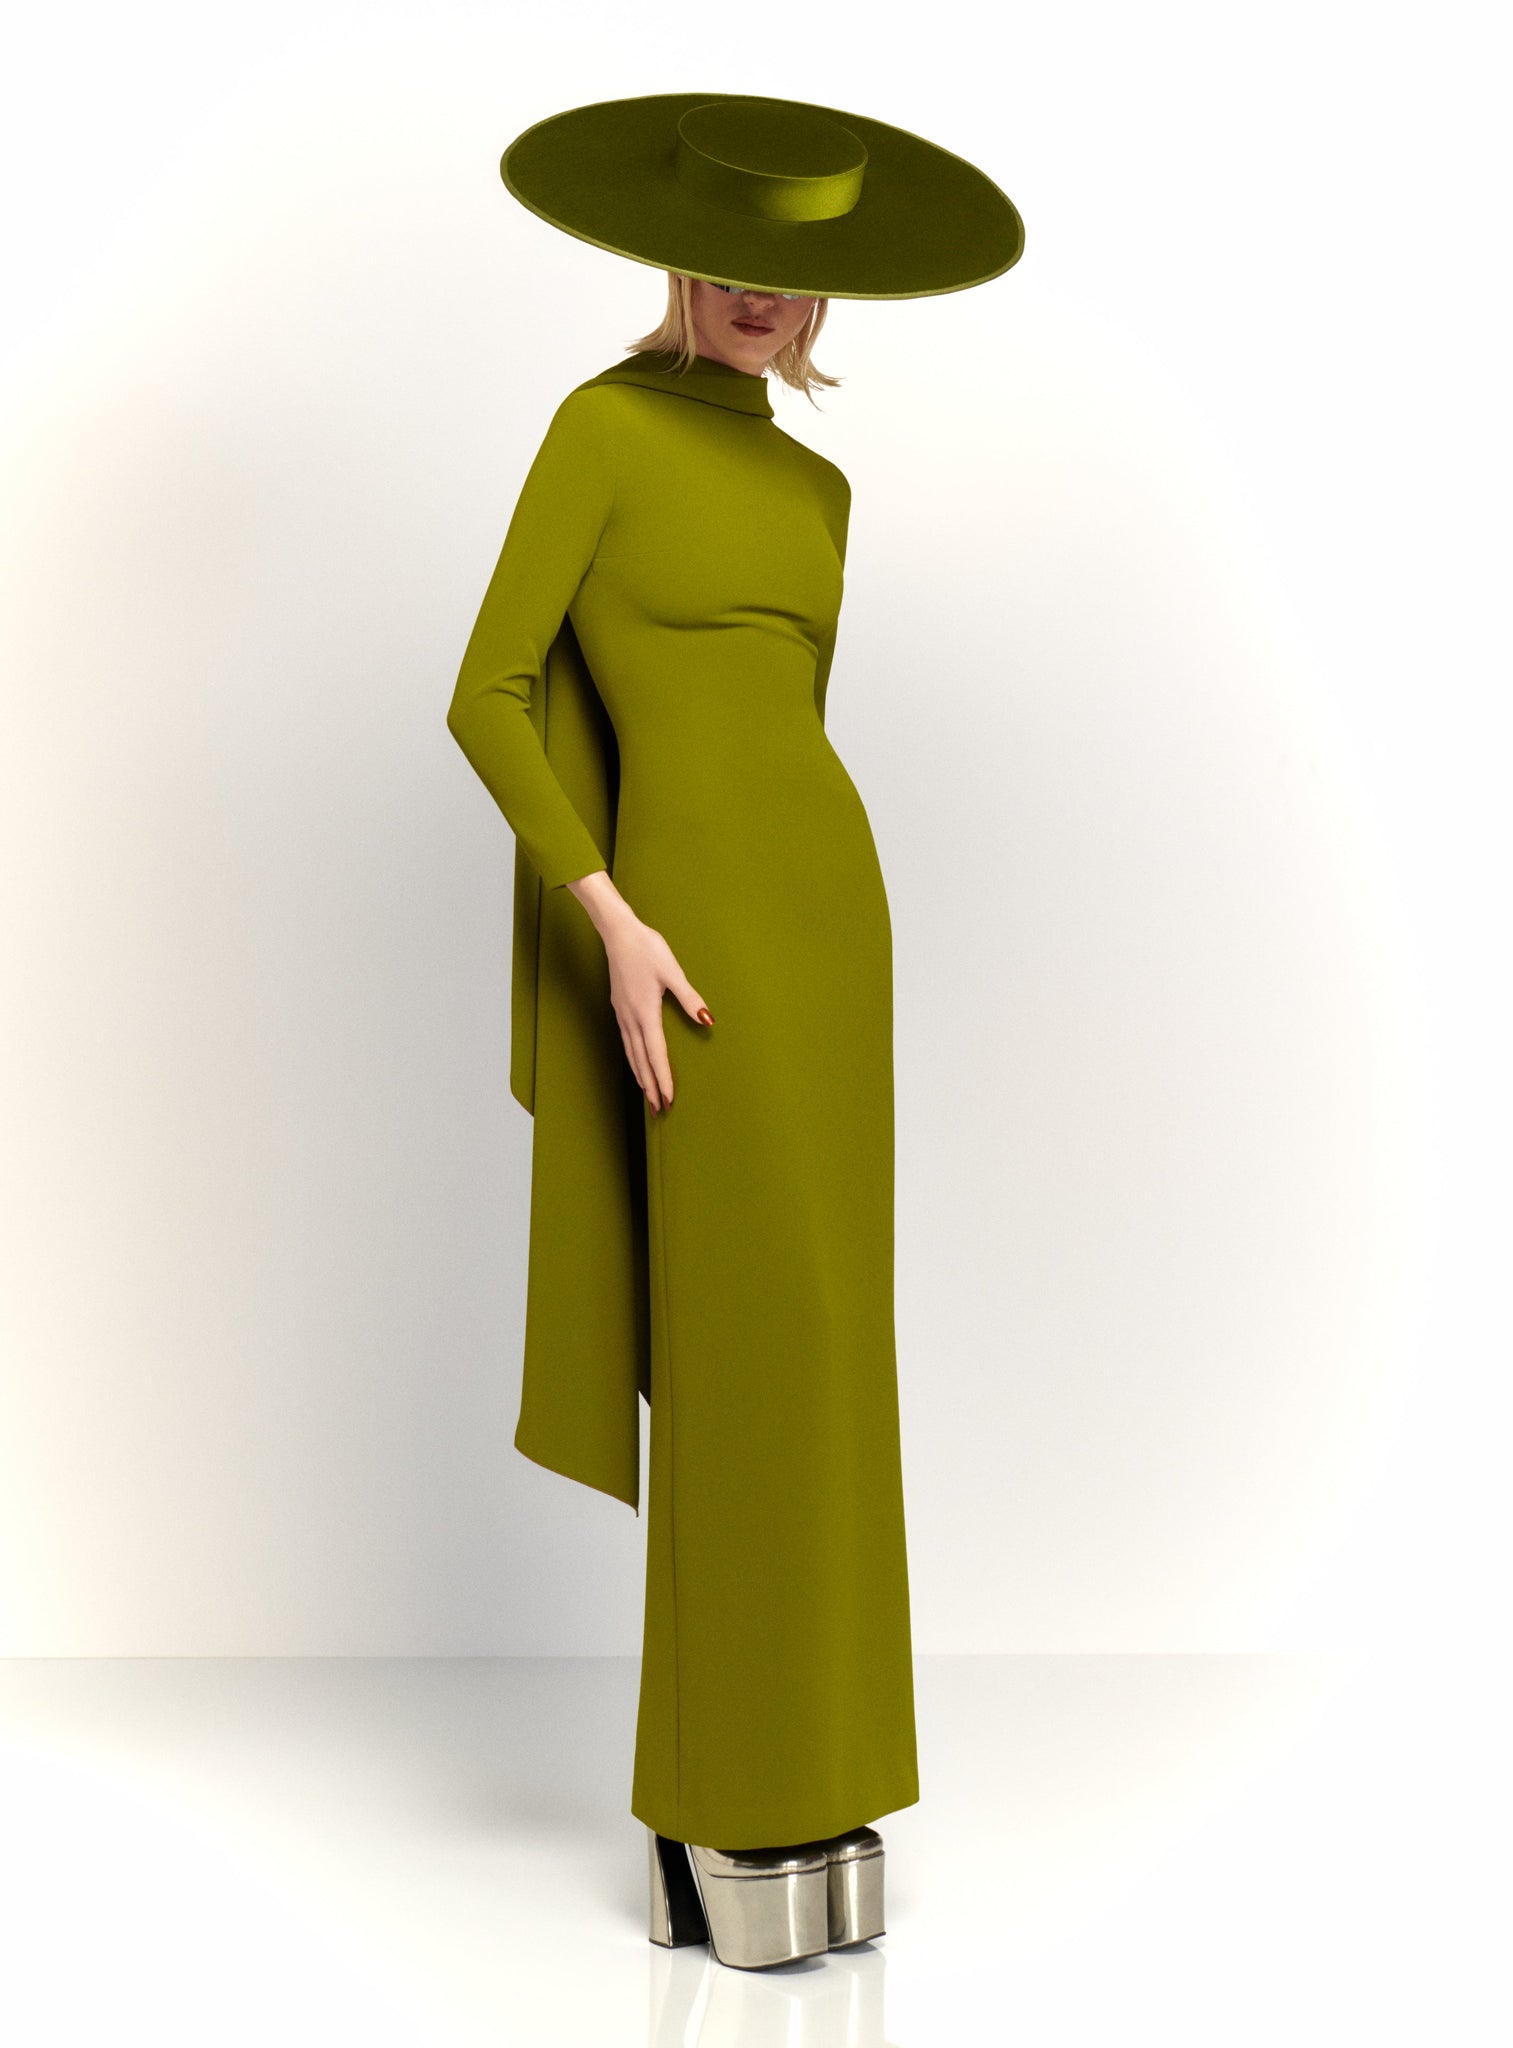 The Luisa Maxi Dress in Sweet Pea Green